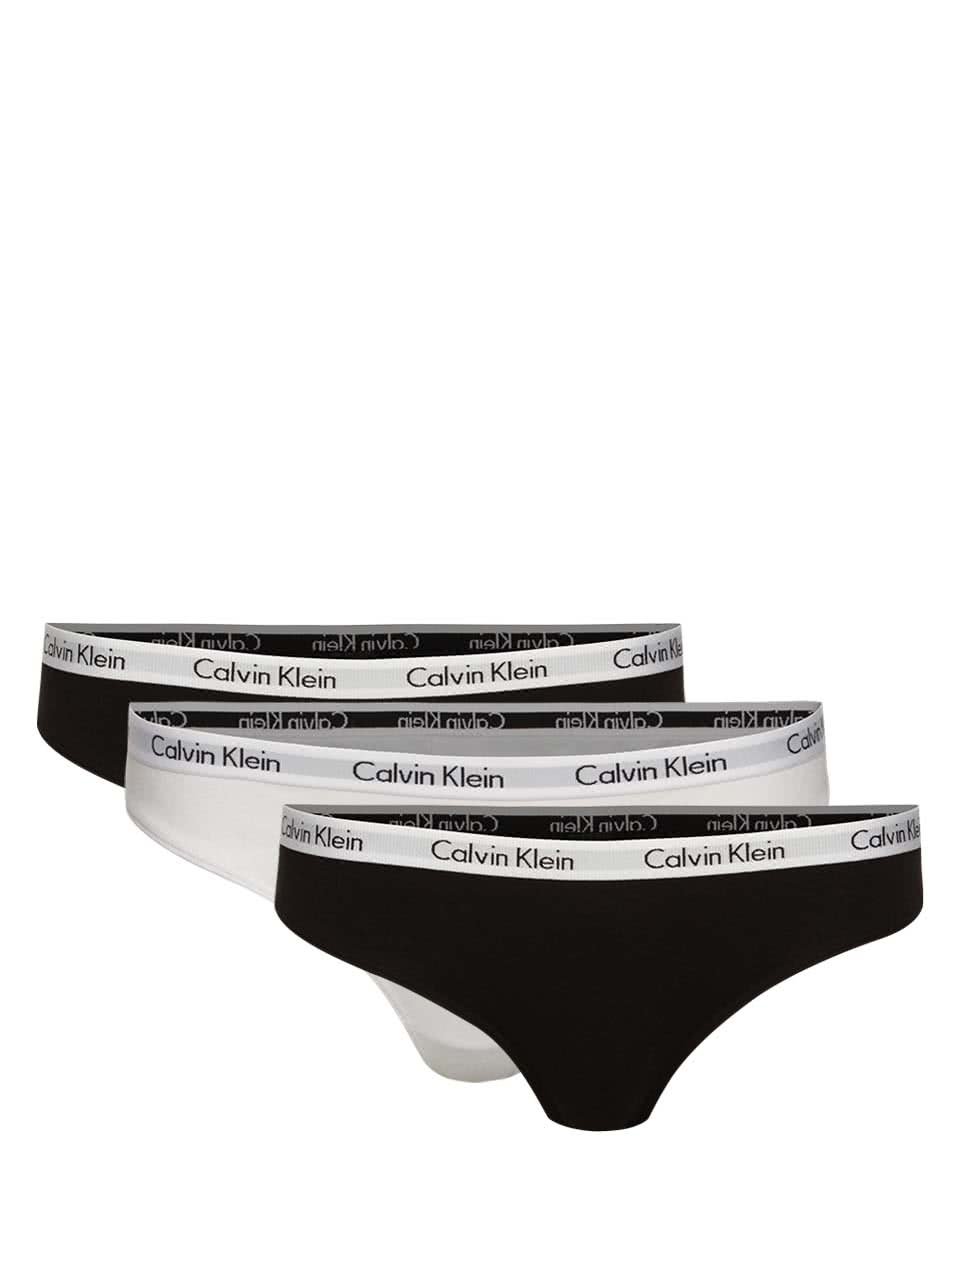 Sada tří kalhotek v černé a bílé barvě Calvin Klein